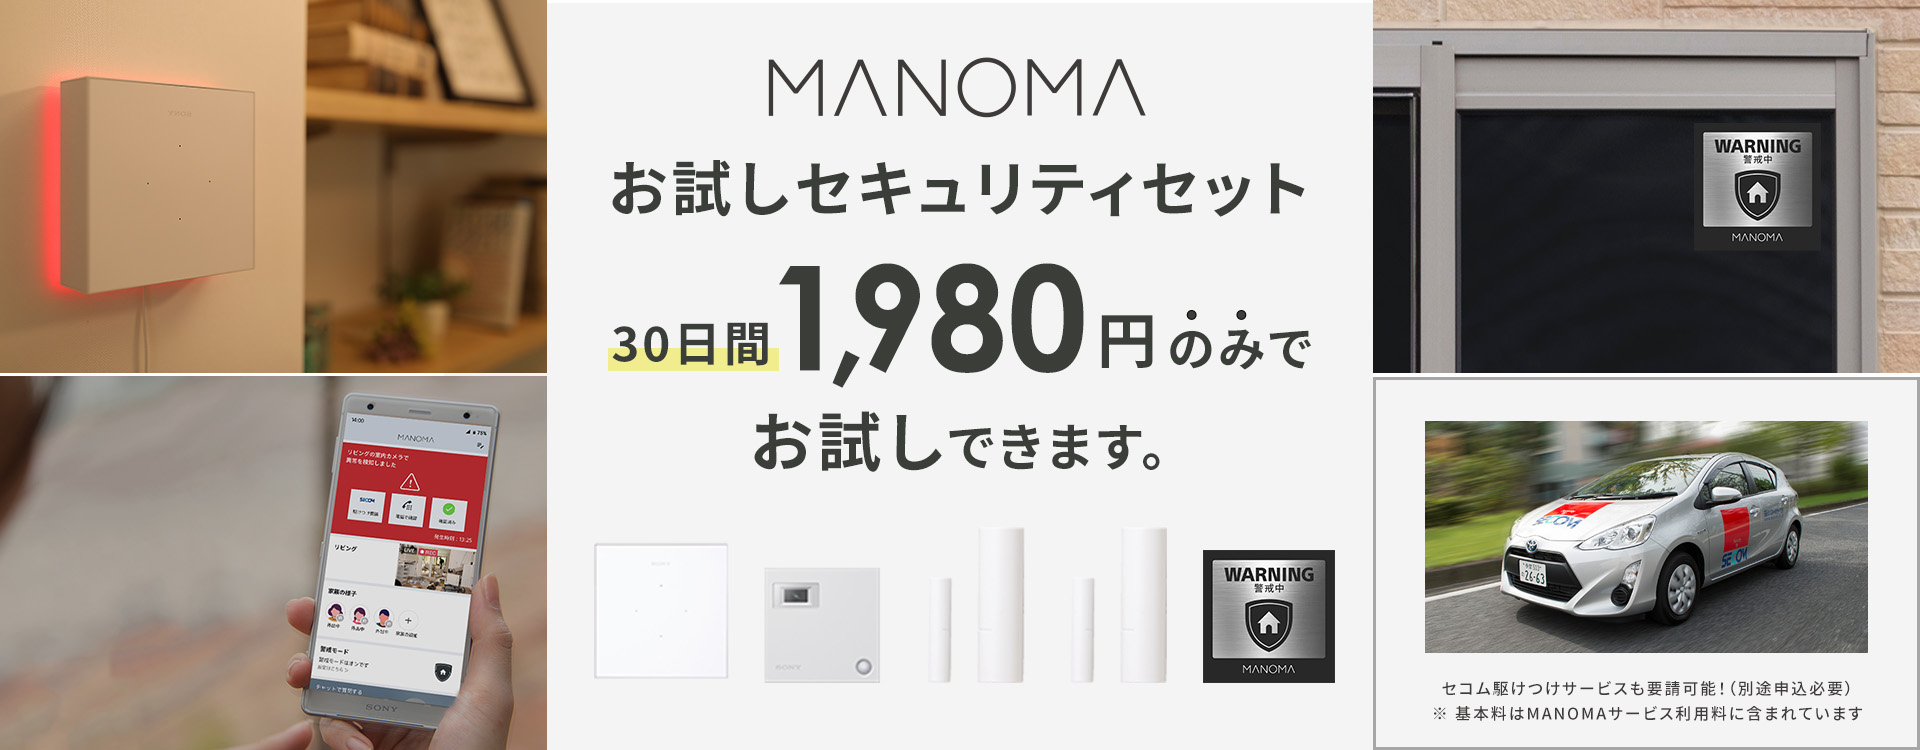 ソニーのスマートホームサービス「MANOMA」、30日間1,980円で体験 